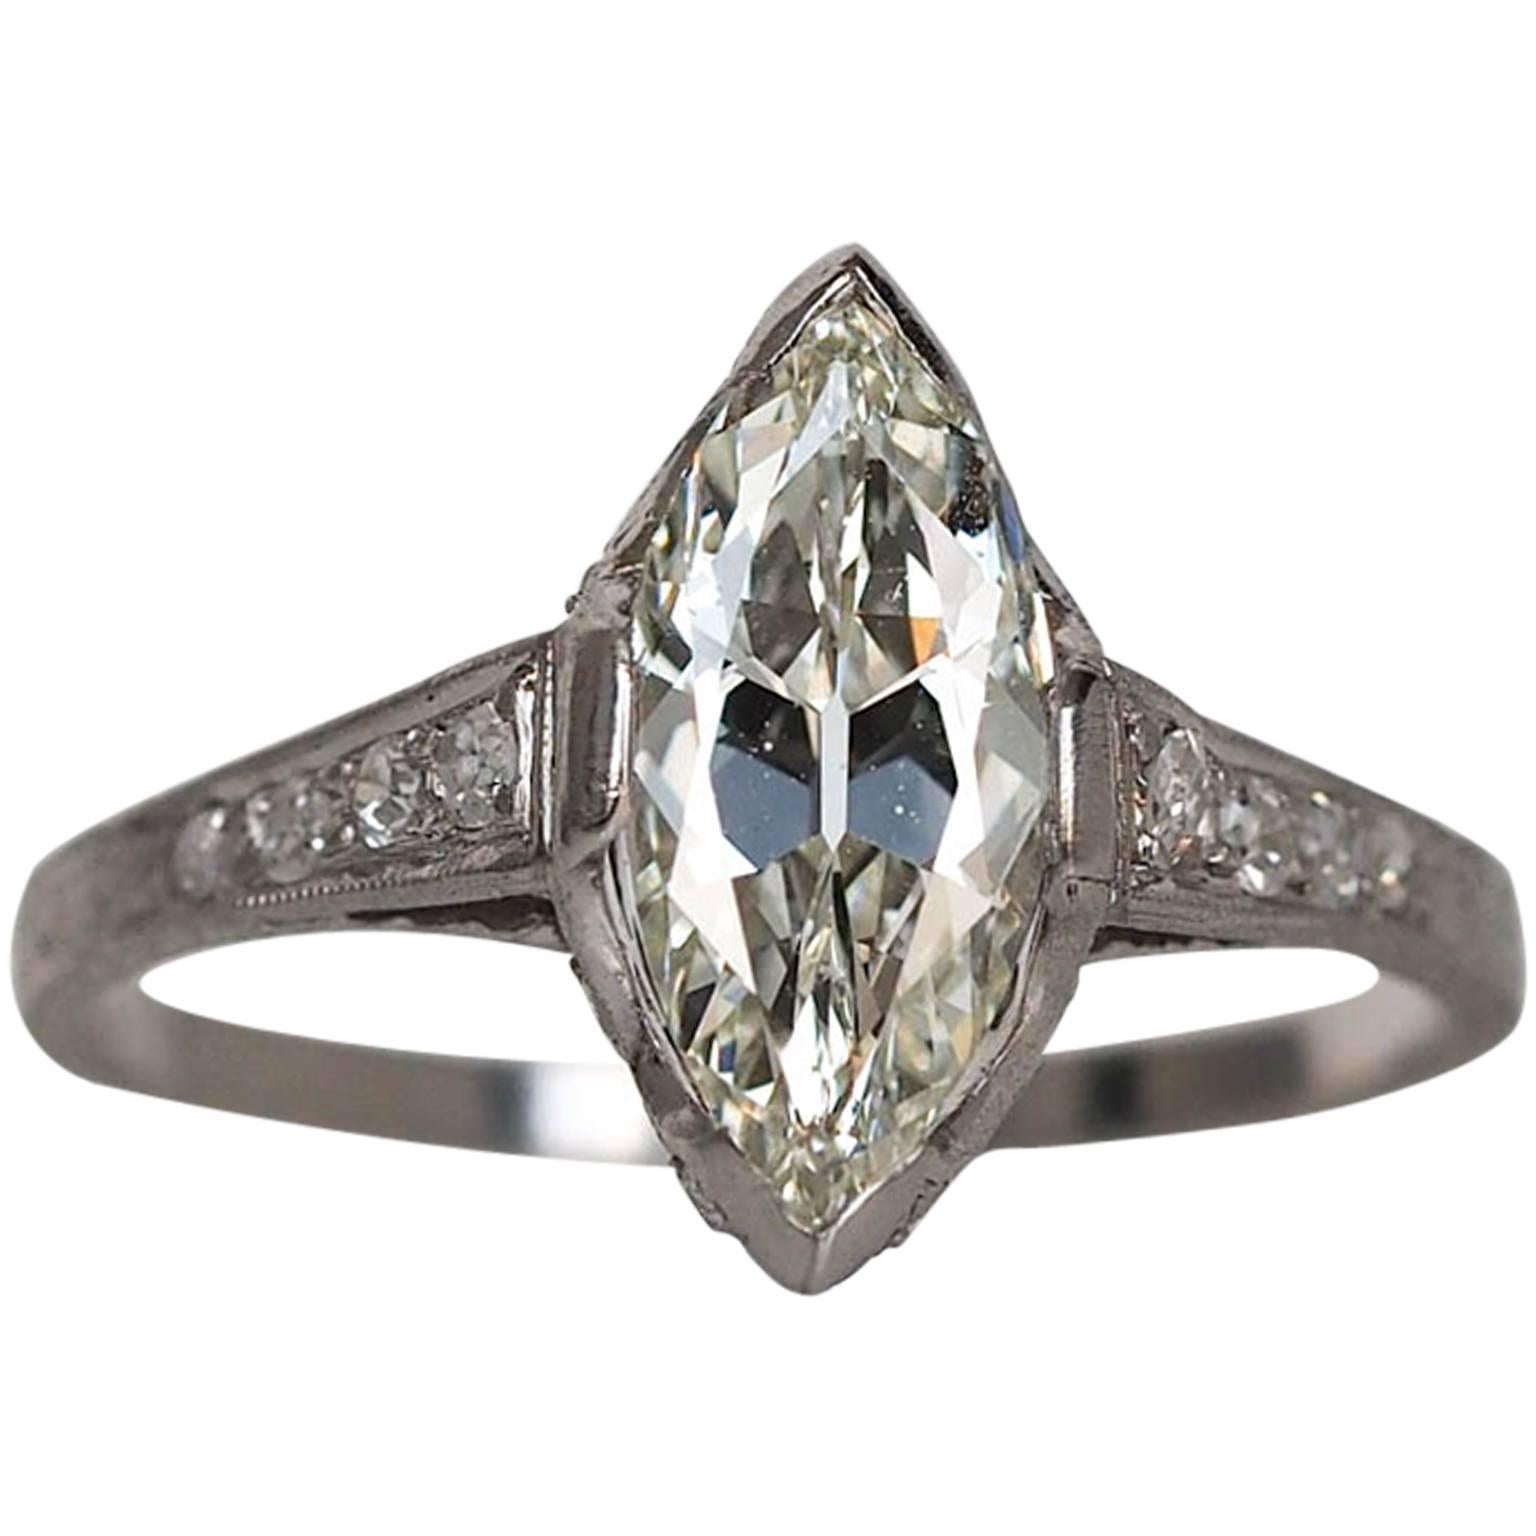 1910s Edwardian GIA Certified 1.55 Carat Diamond Platinum Engagement Ring